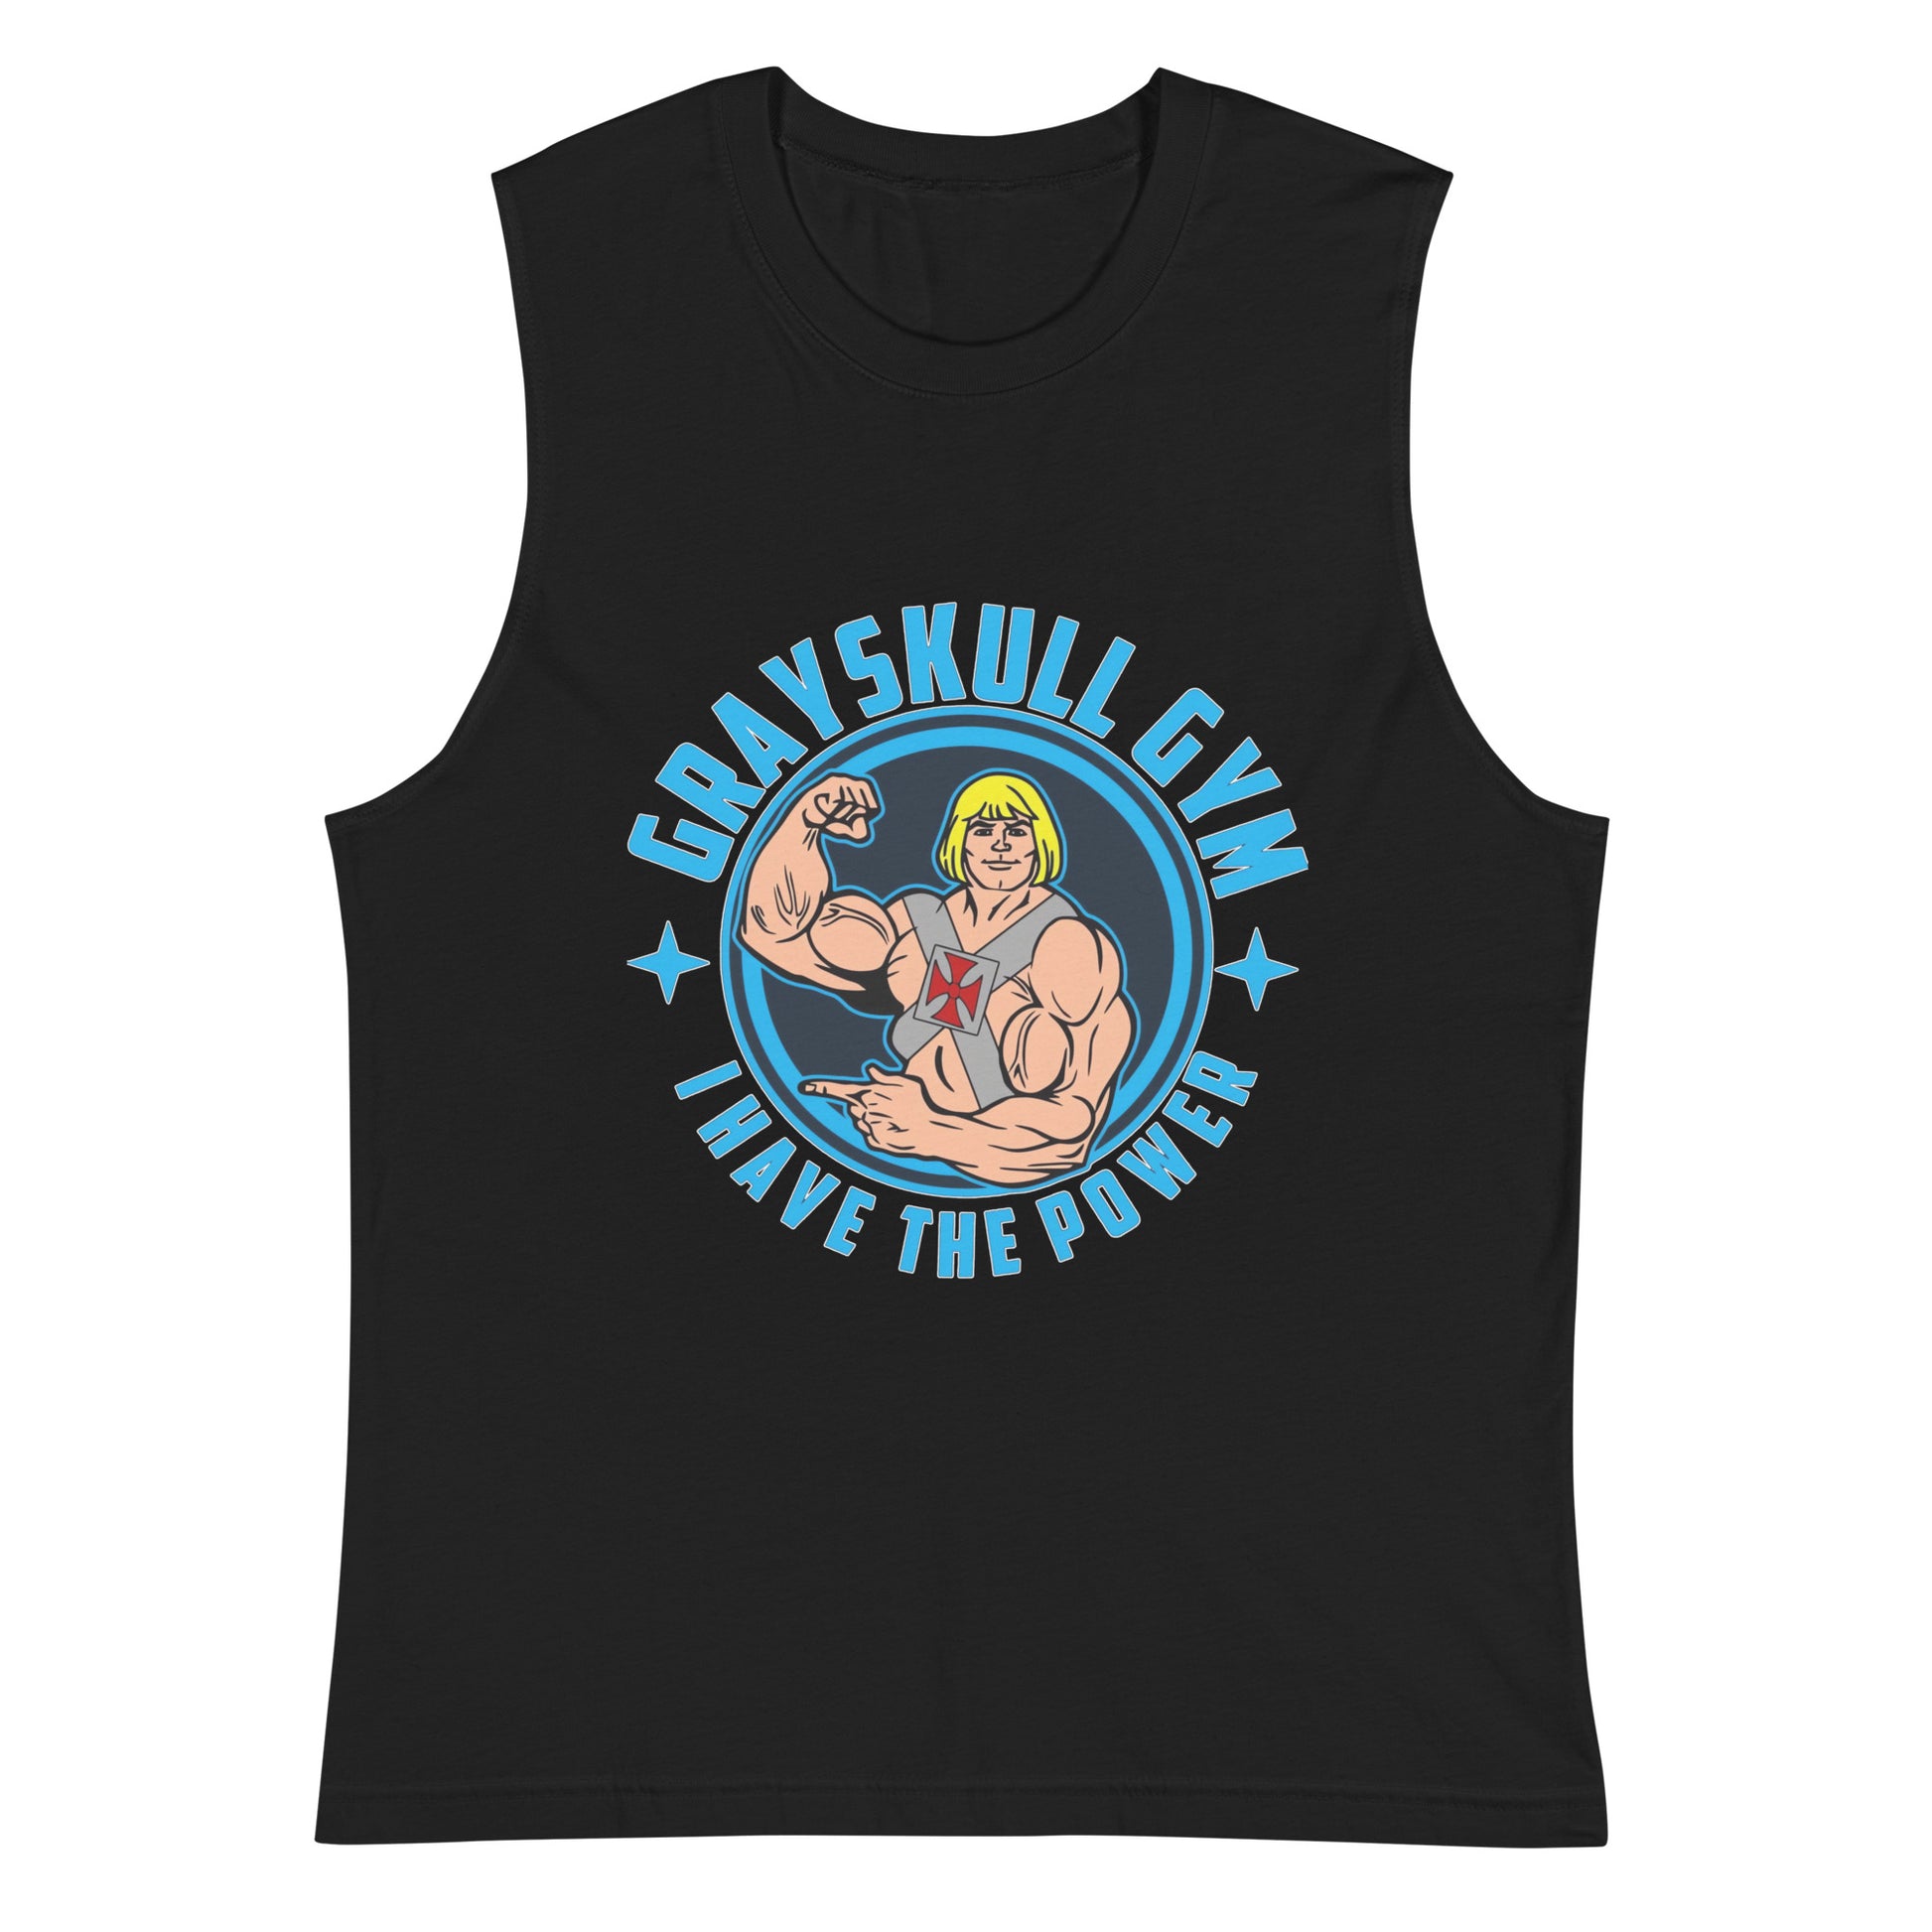 Camiseta sin mangas perfecta para entrenar, Camiseta Grayskull Gym compra en línea y experimenta el mejor servicio al cliente. envíos internacionales.